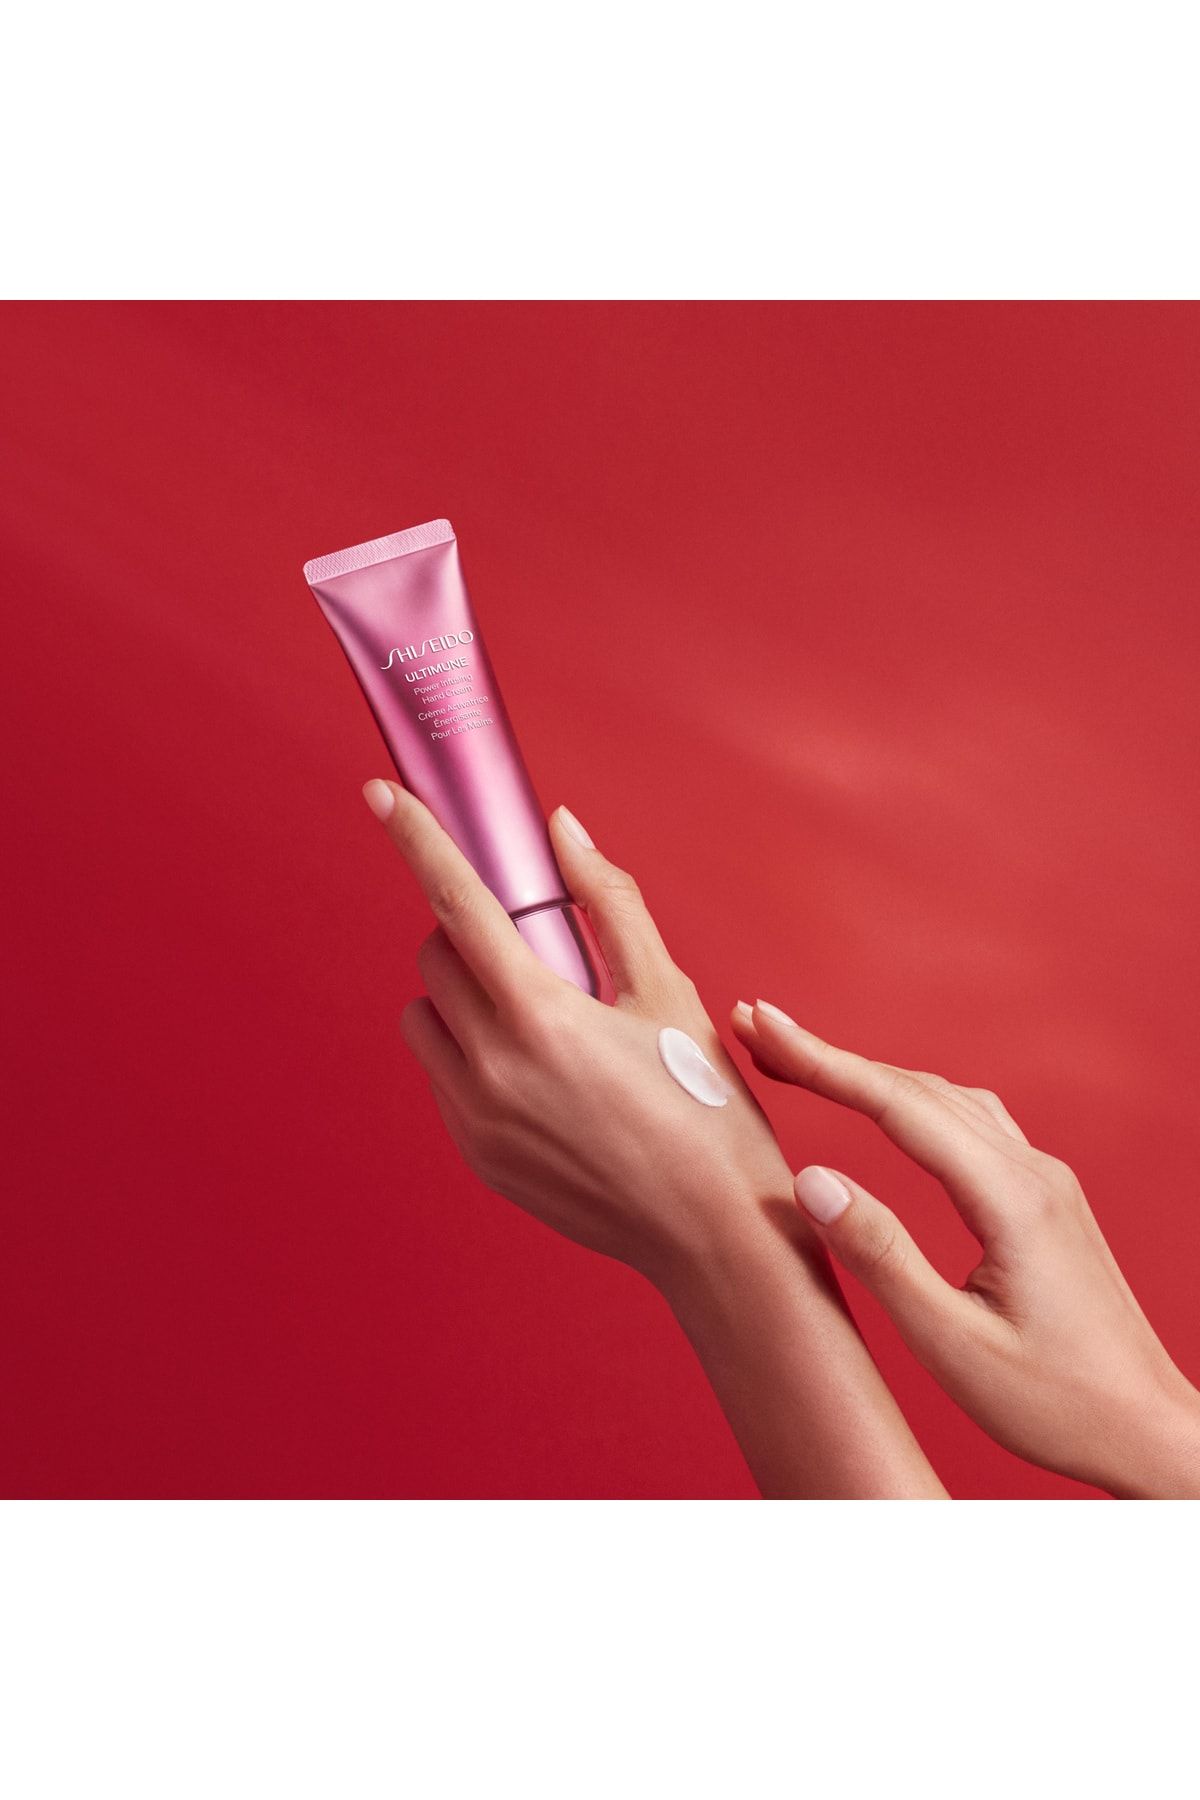 Shiseido کرم مرطوب کننده قدرت بخشیدن به دست UTM